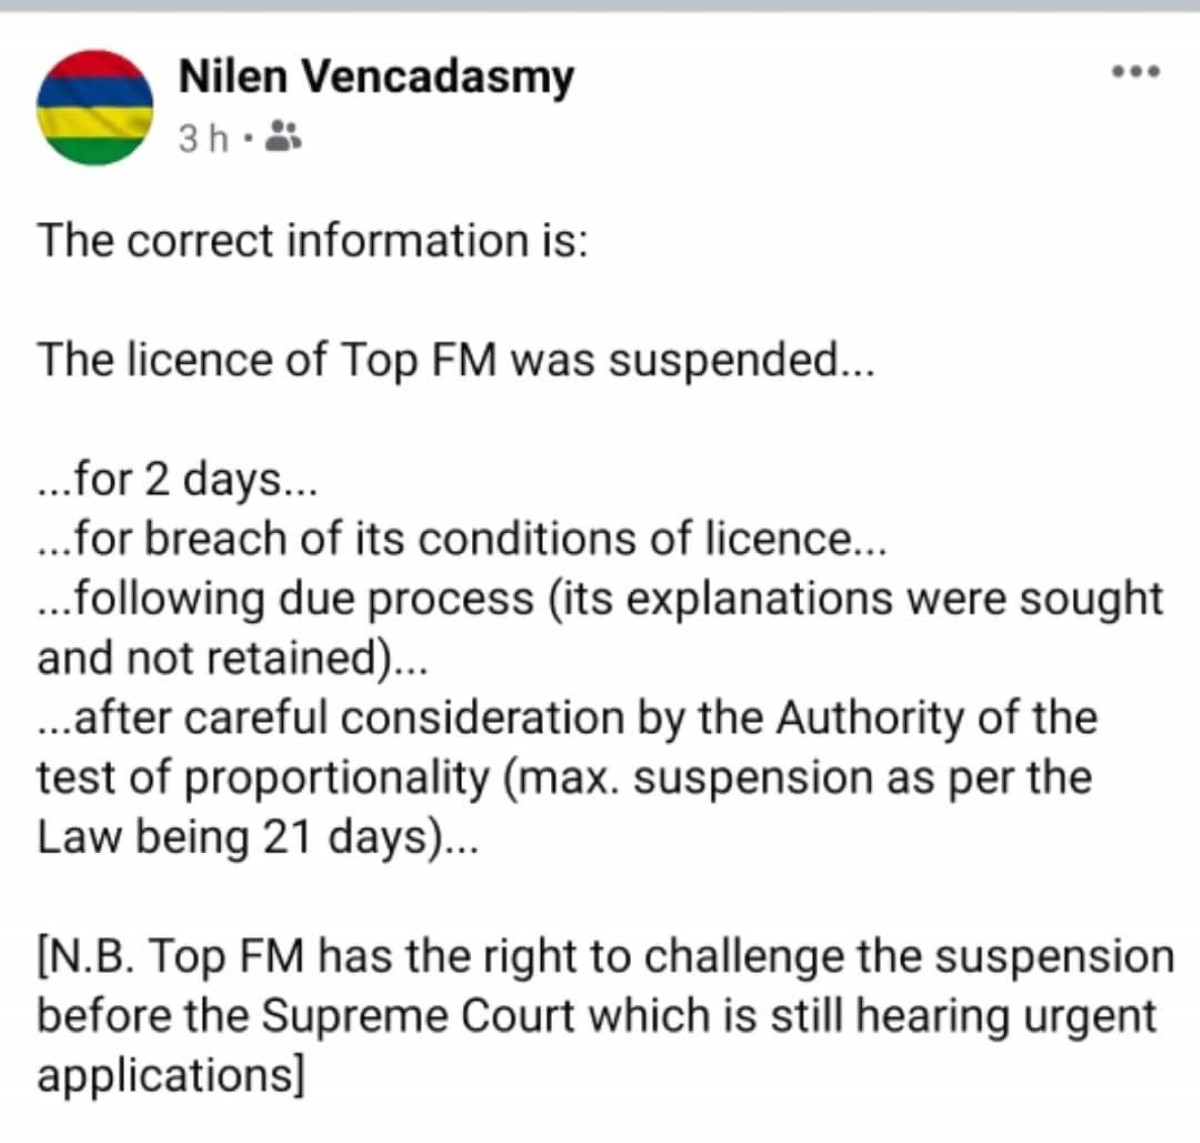 Nilen Vencadasmy publie puis supprime son interprétation de la suspension de Top Fm